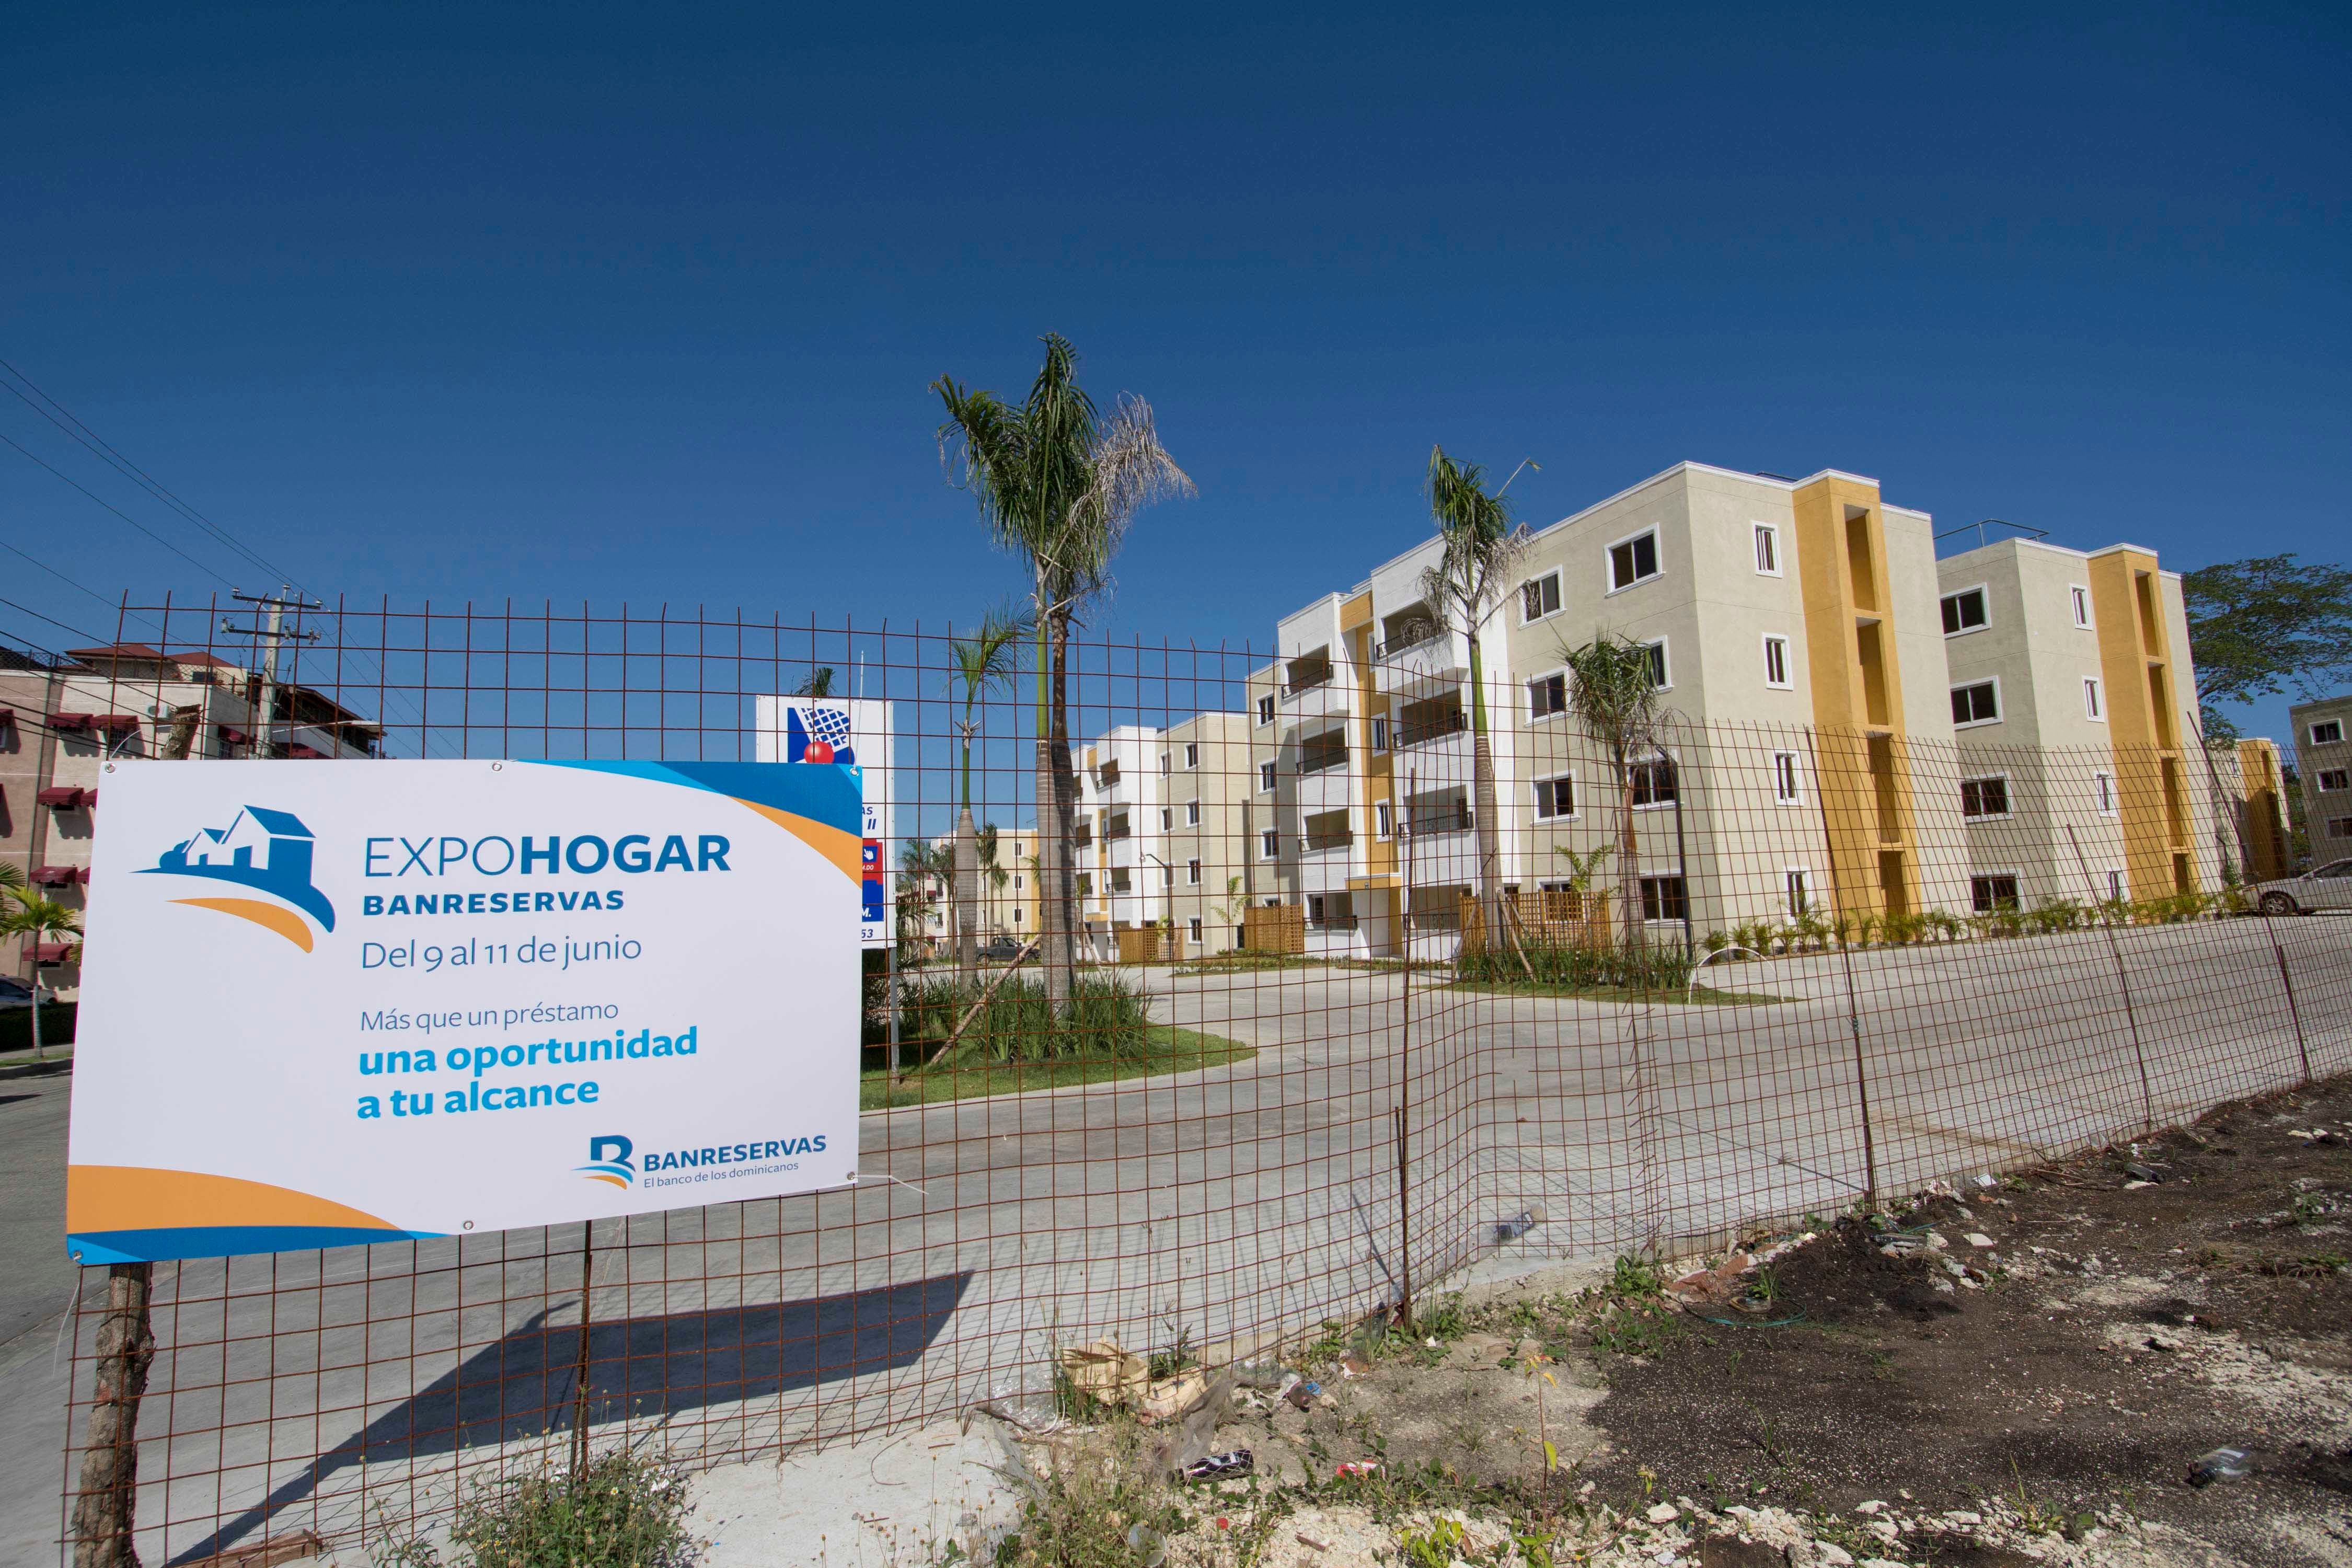 Presidenta de Acoprovi afirma Expo Hogar Banreservas producirá importantes cambios en mercado inmobiliario